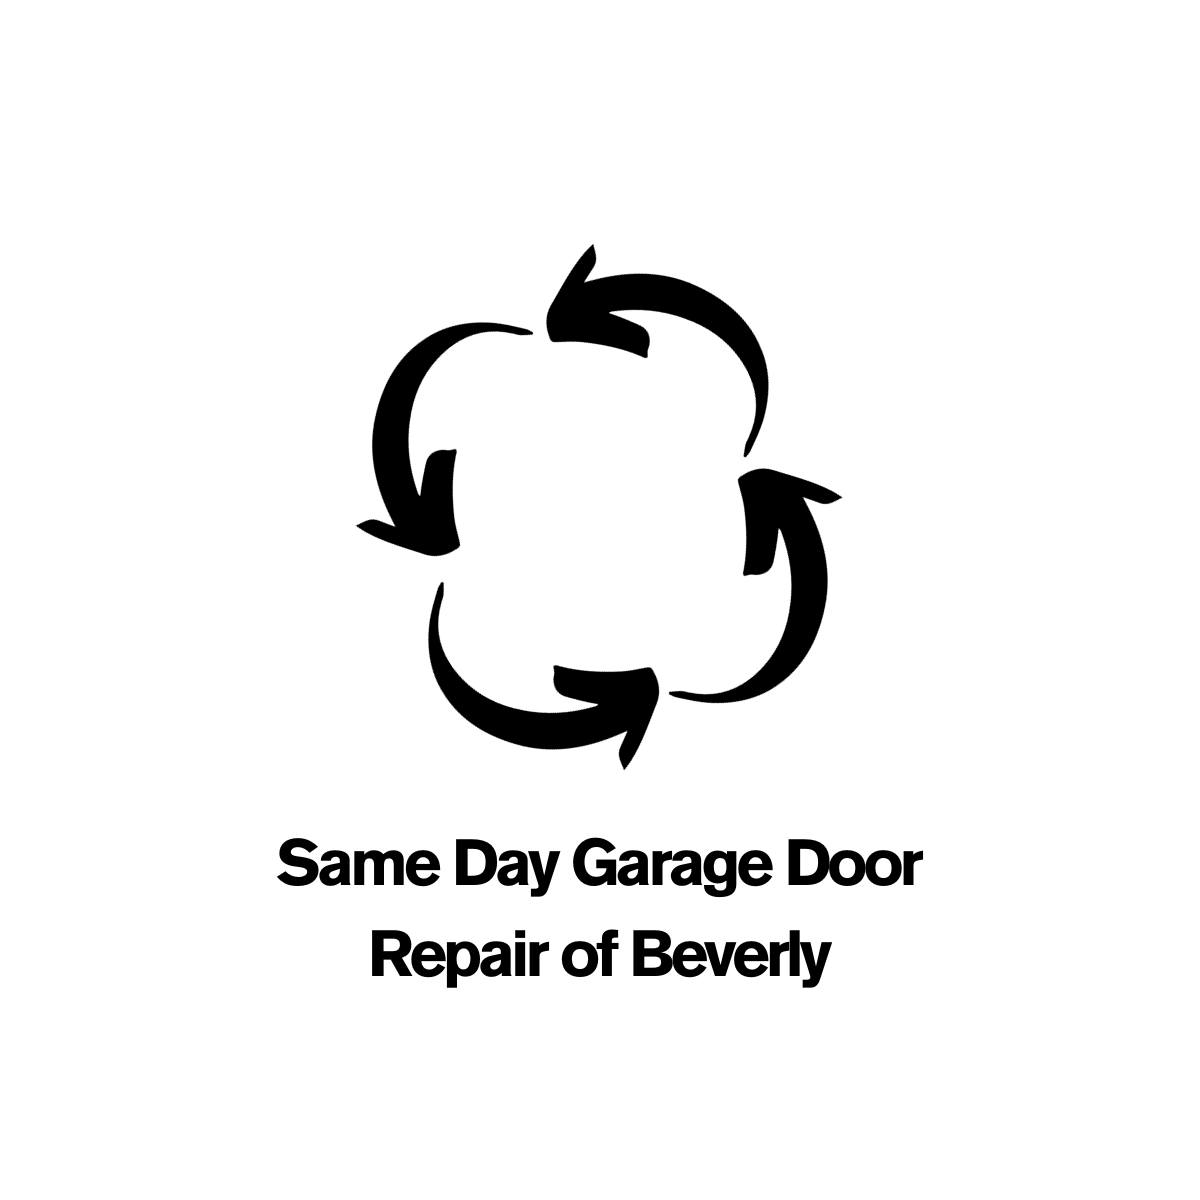 Same Day Garage Door Repair of Beverly